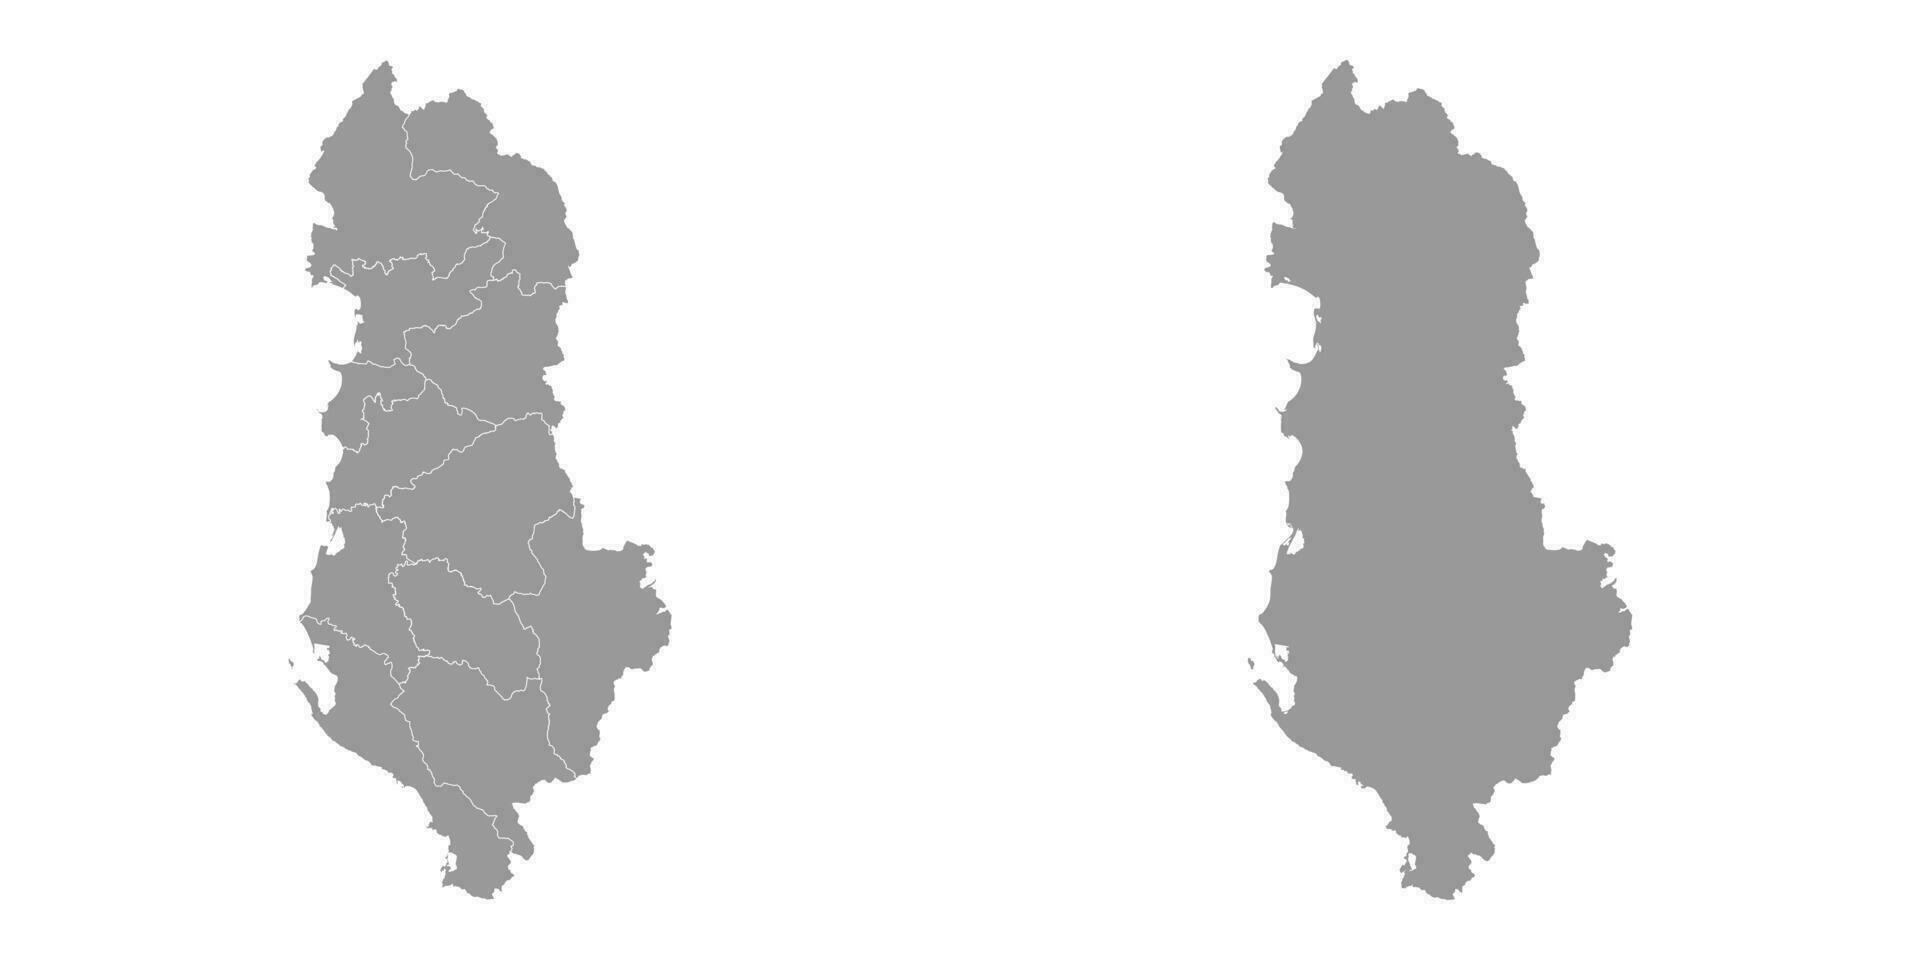 Albanien grau Karte mit administrative Unterteilungen. Vektor Illustration.